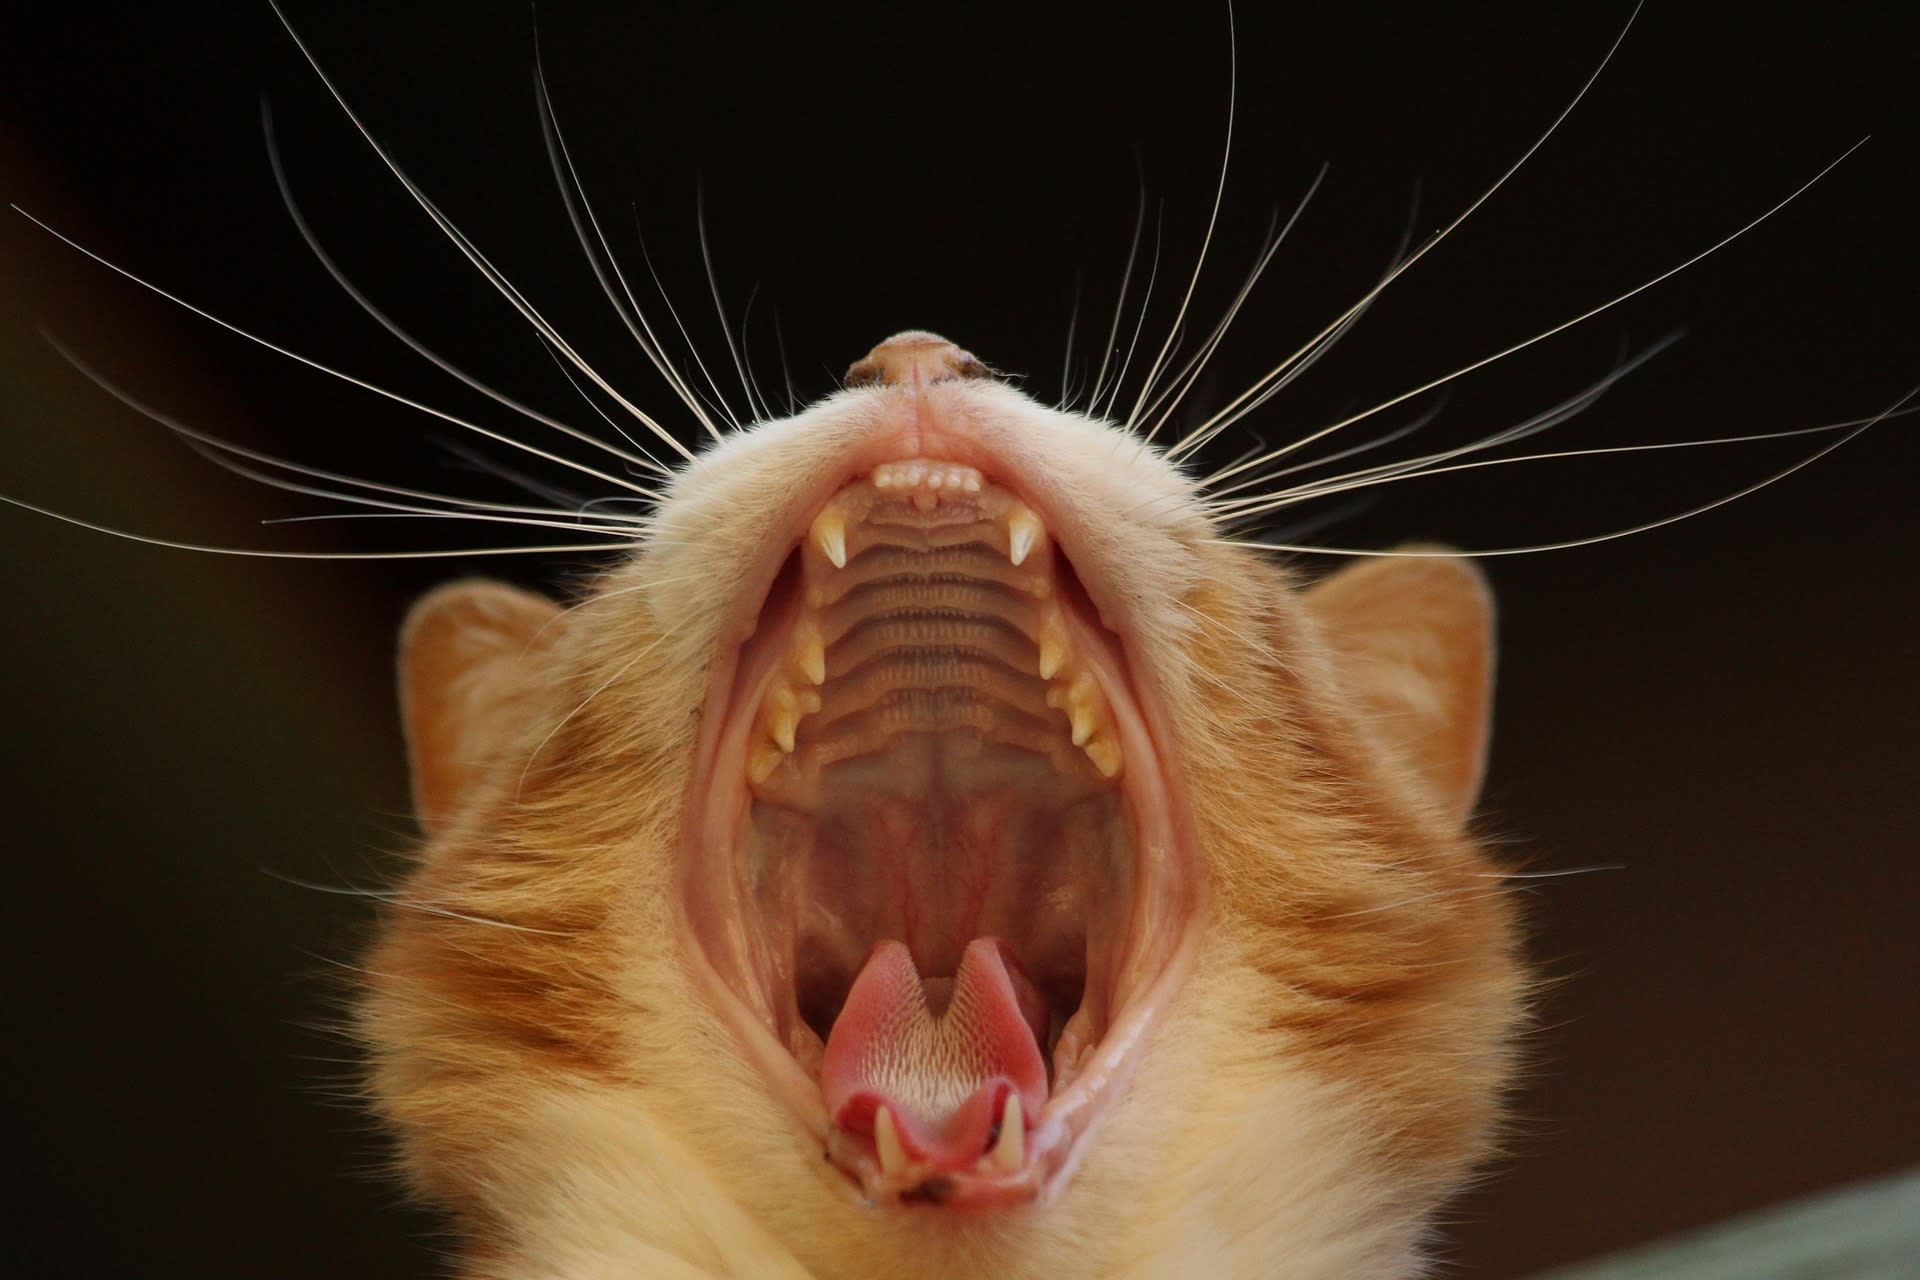 Mléčný chrup má dvacet šest zubů, v dospělosti má kočka třicet zubů.